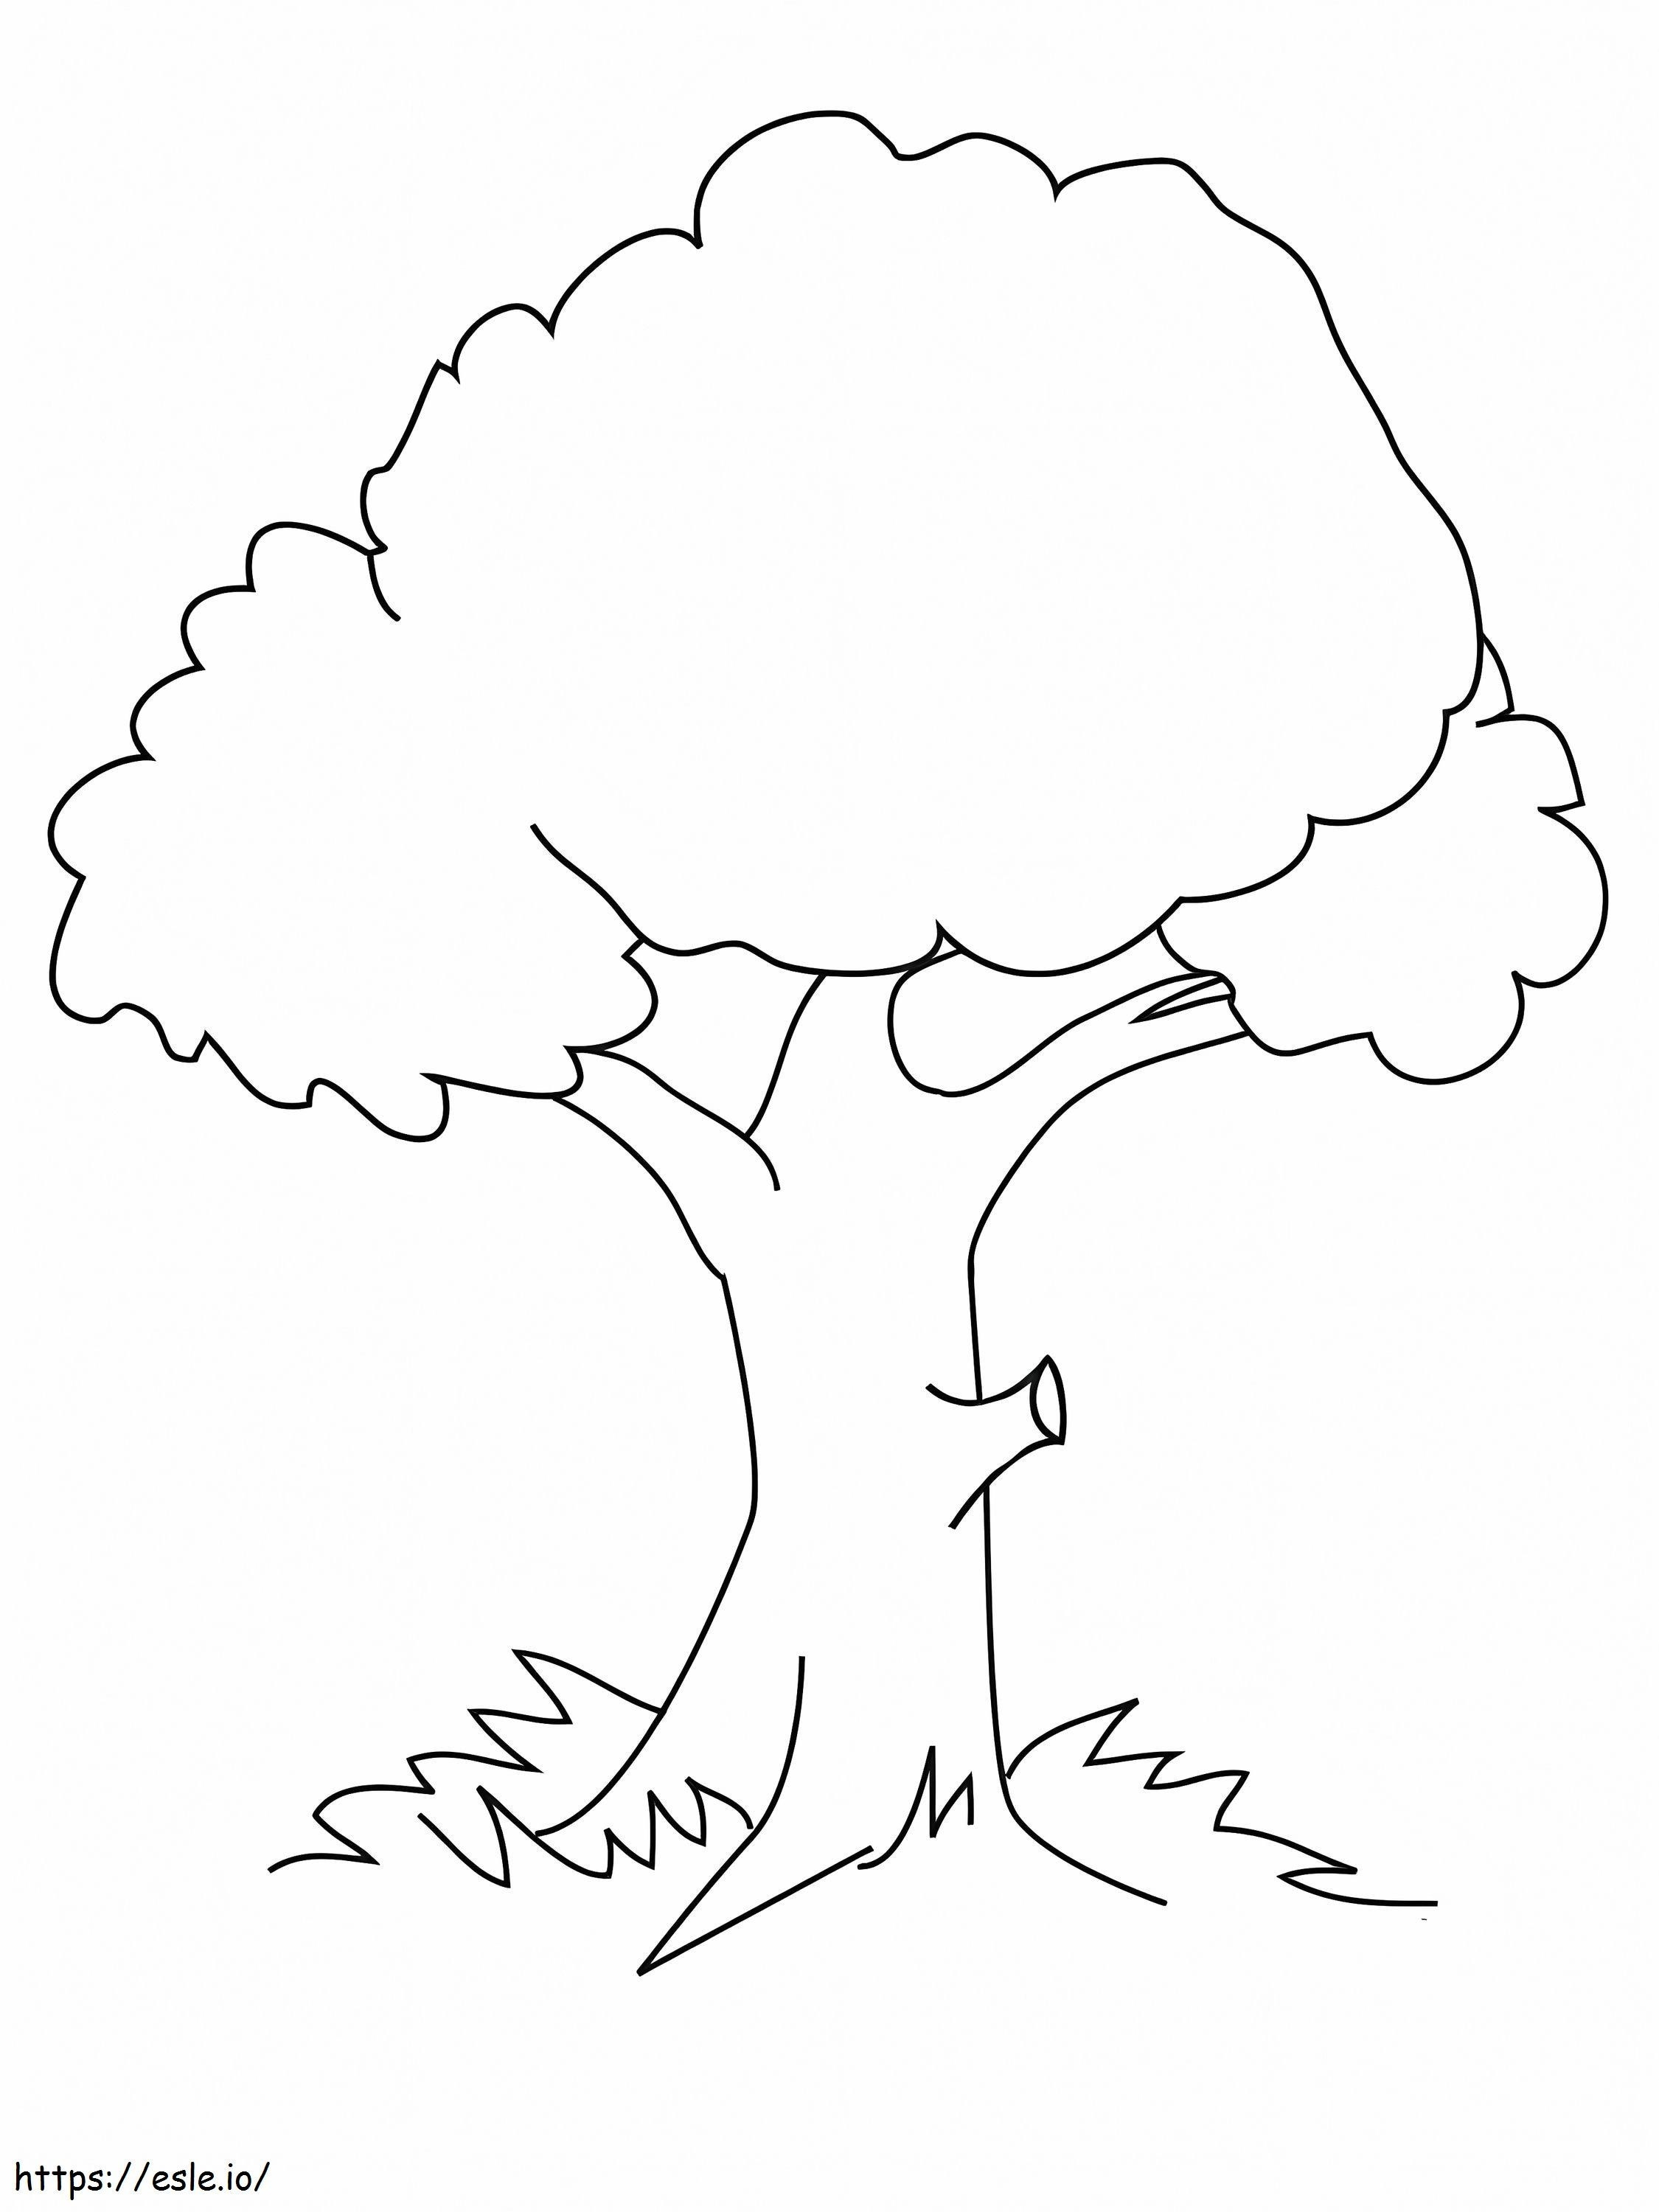 Normalne drzewo kolorowanka